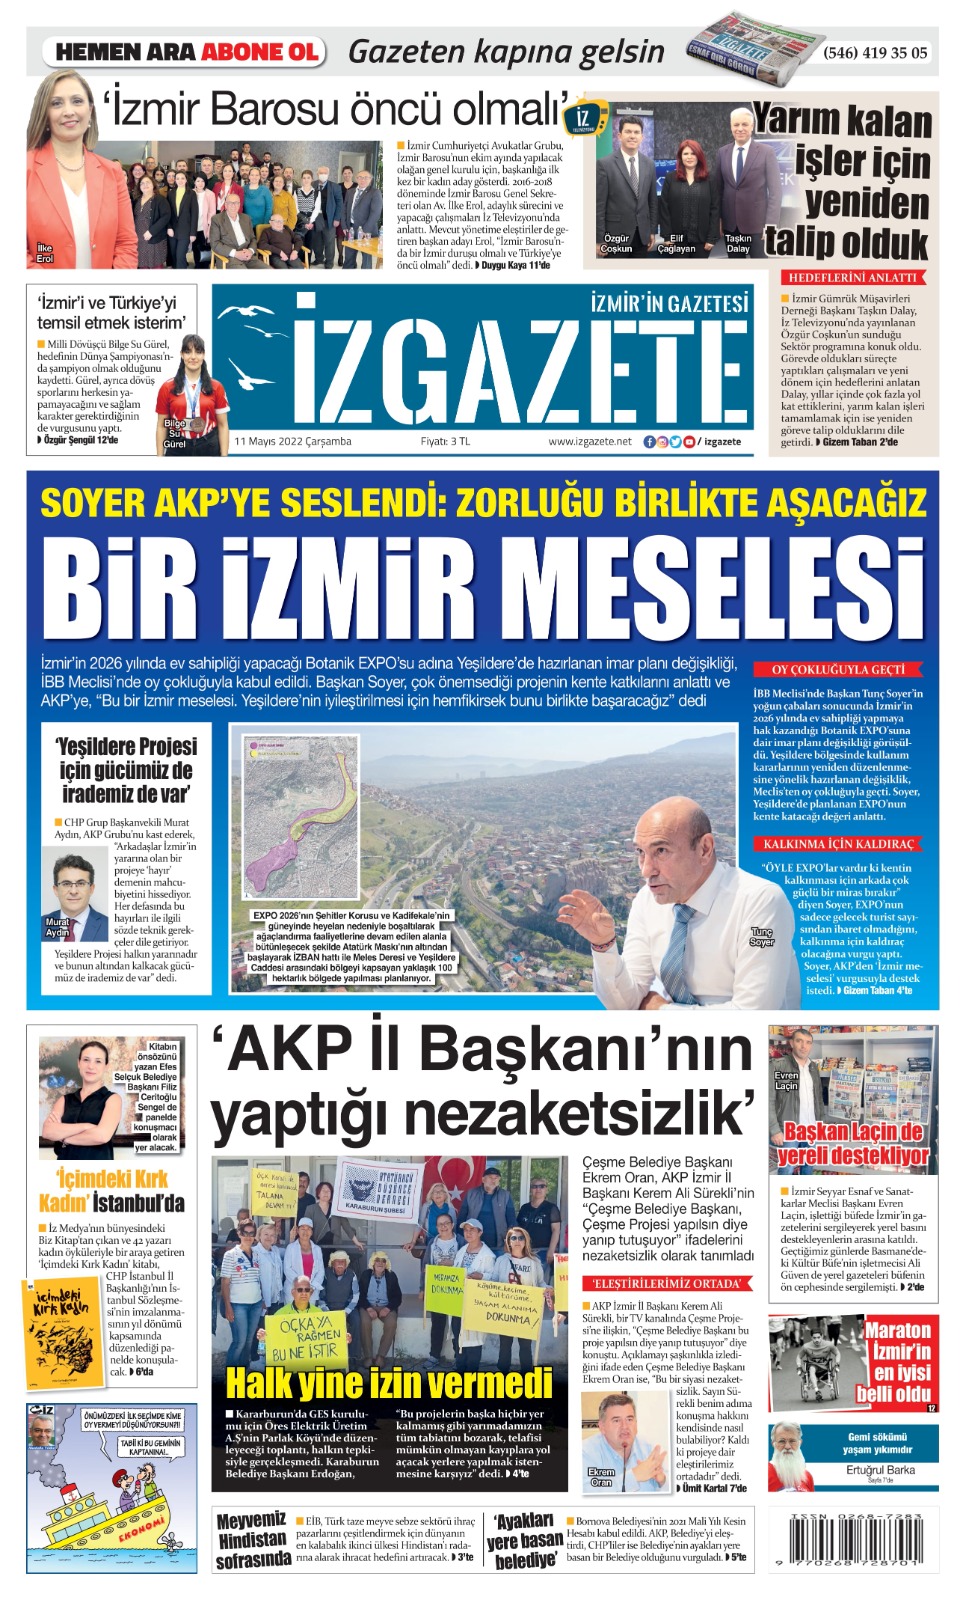 İz Gazete - İzmir'in Gazetesi - 11.05.2022 Manşeti